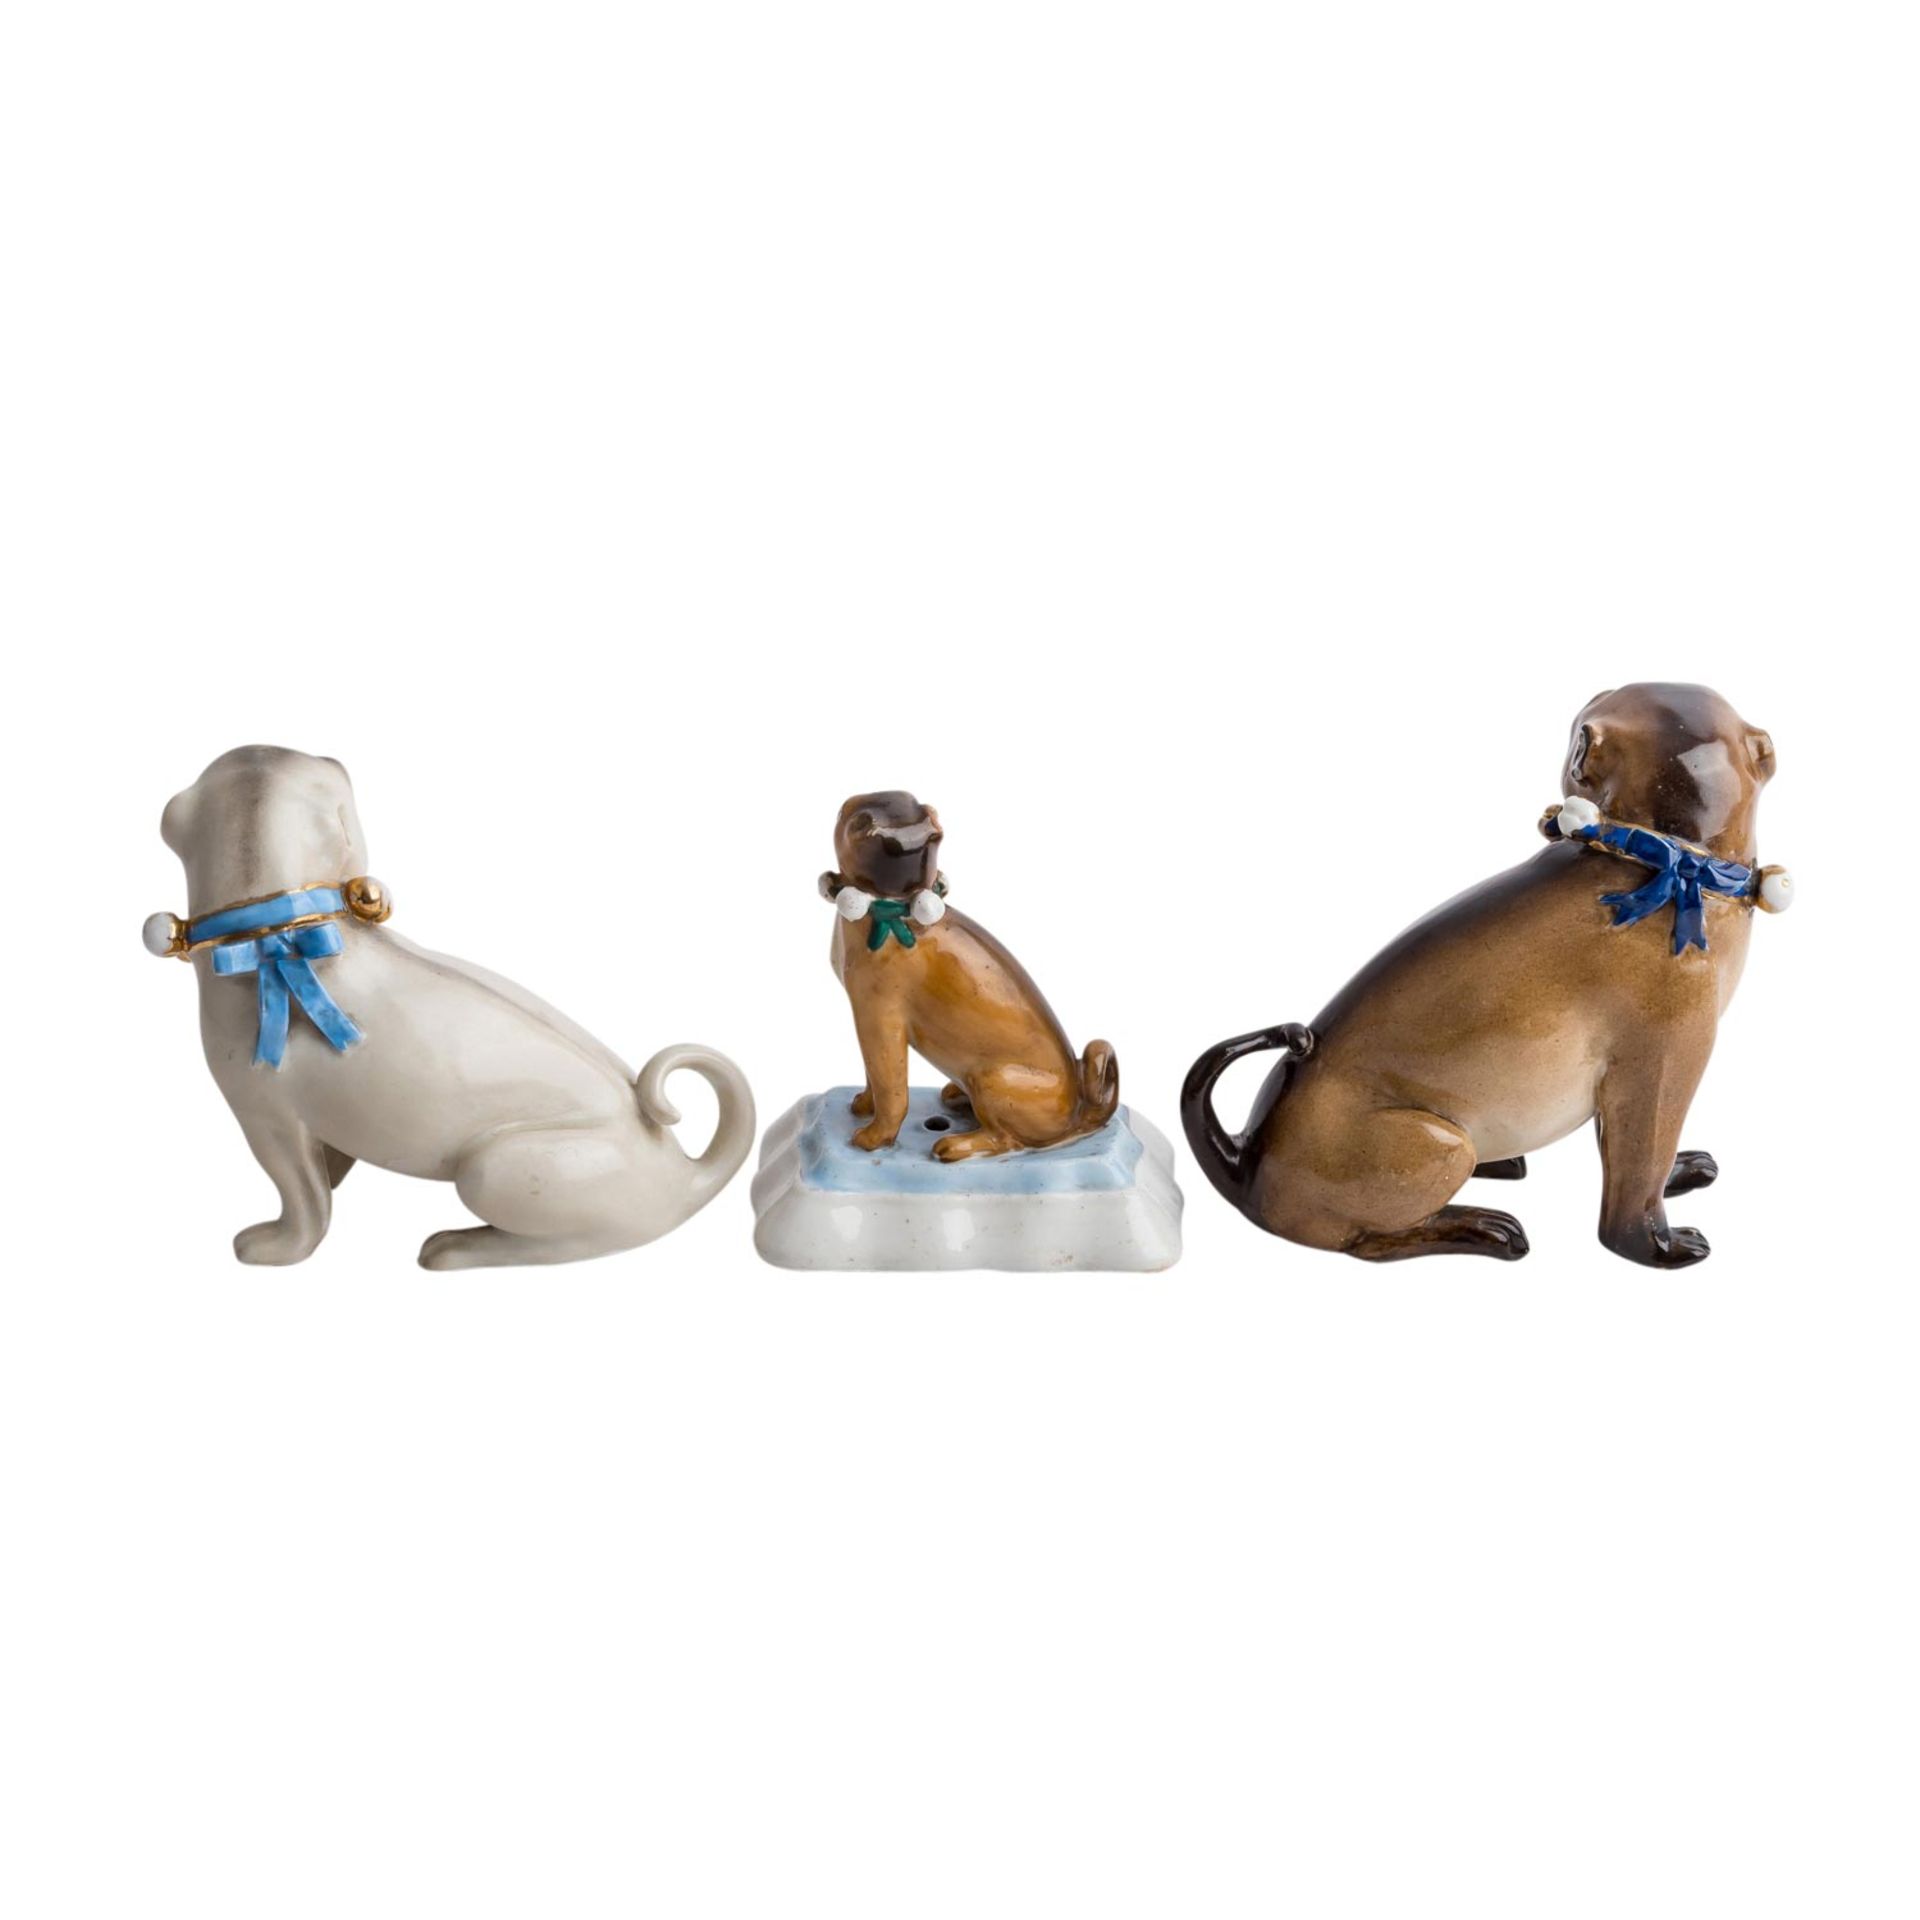 5tlg. Konvolut Tierfiguren "Mops", 20. Jh.Bestehend aus 3 sitzenden Mopshunden mit Schellenhalsband, - Bild 4 aus 4